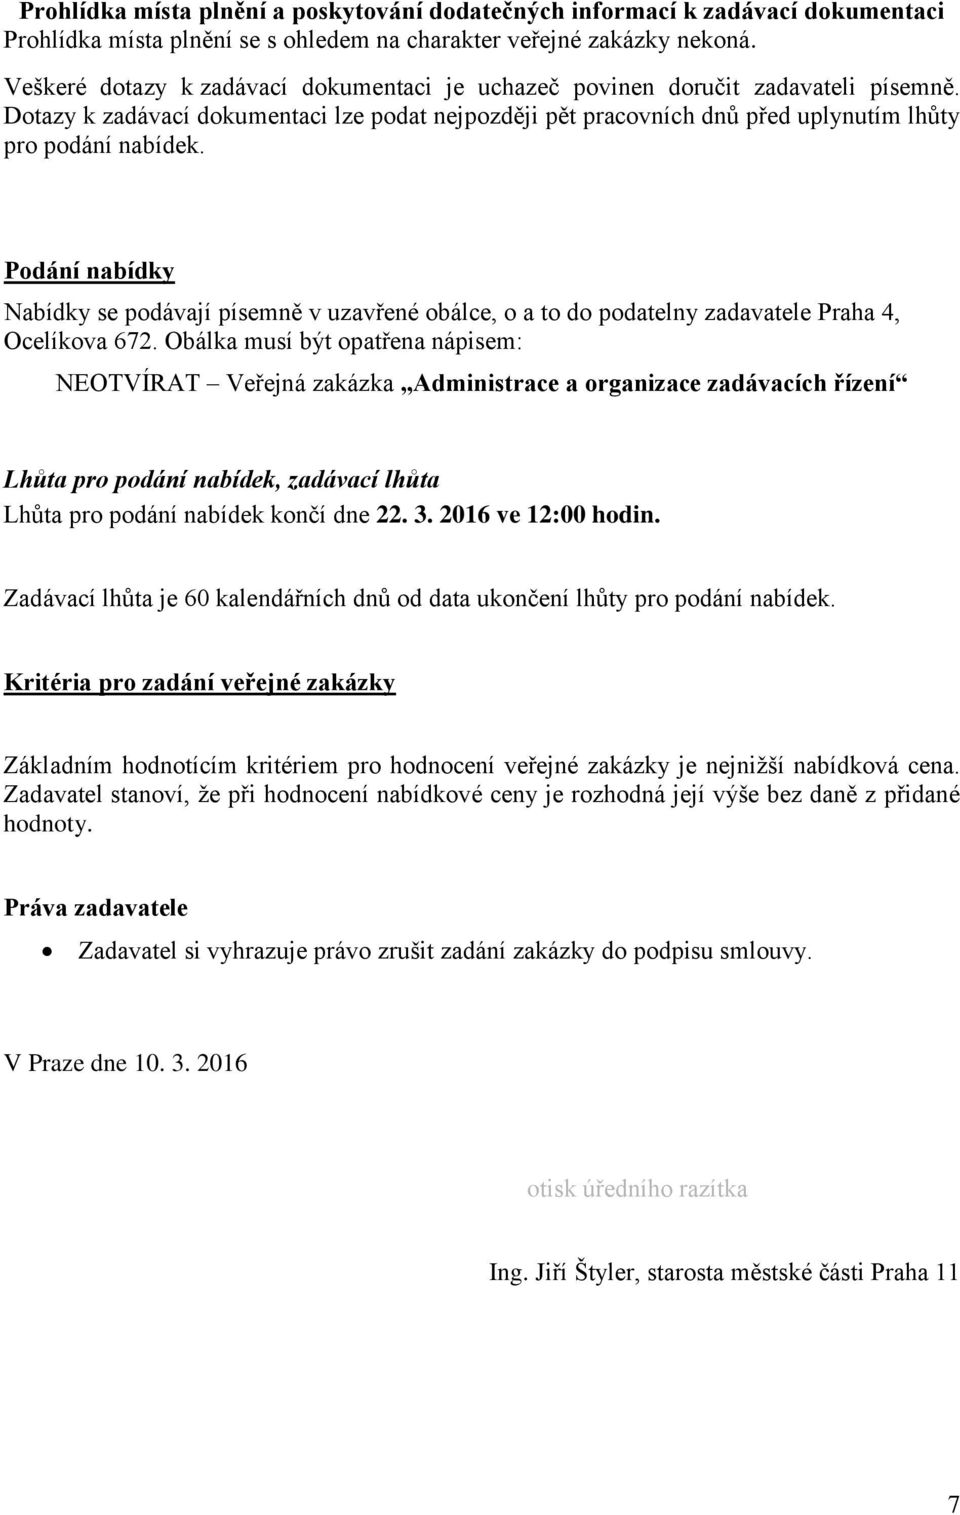 Podání nabídky Nabídky se podávají písemně v uzavřené obálce, o a to do podatelny zadavatele Praha 4, Ocelíkova 672.